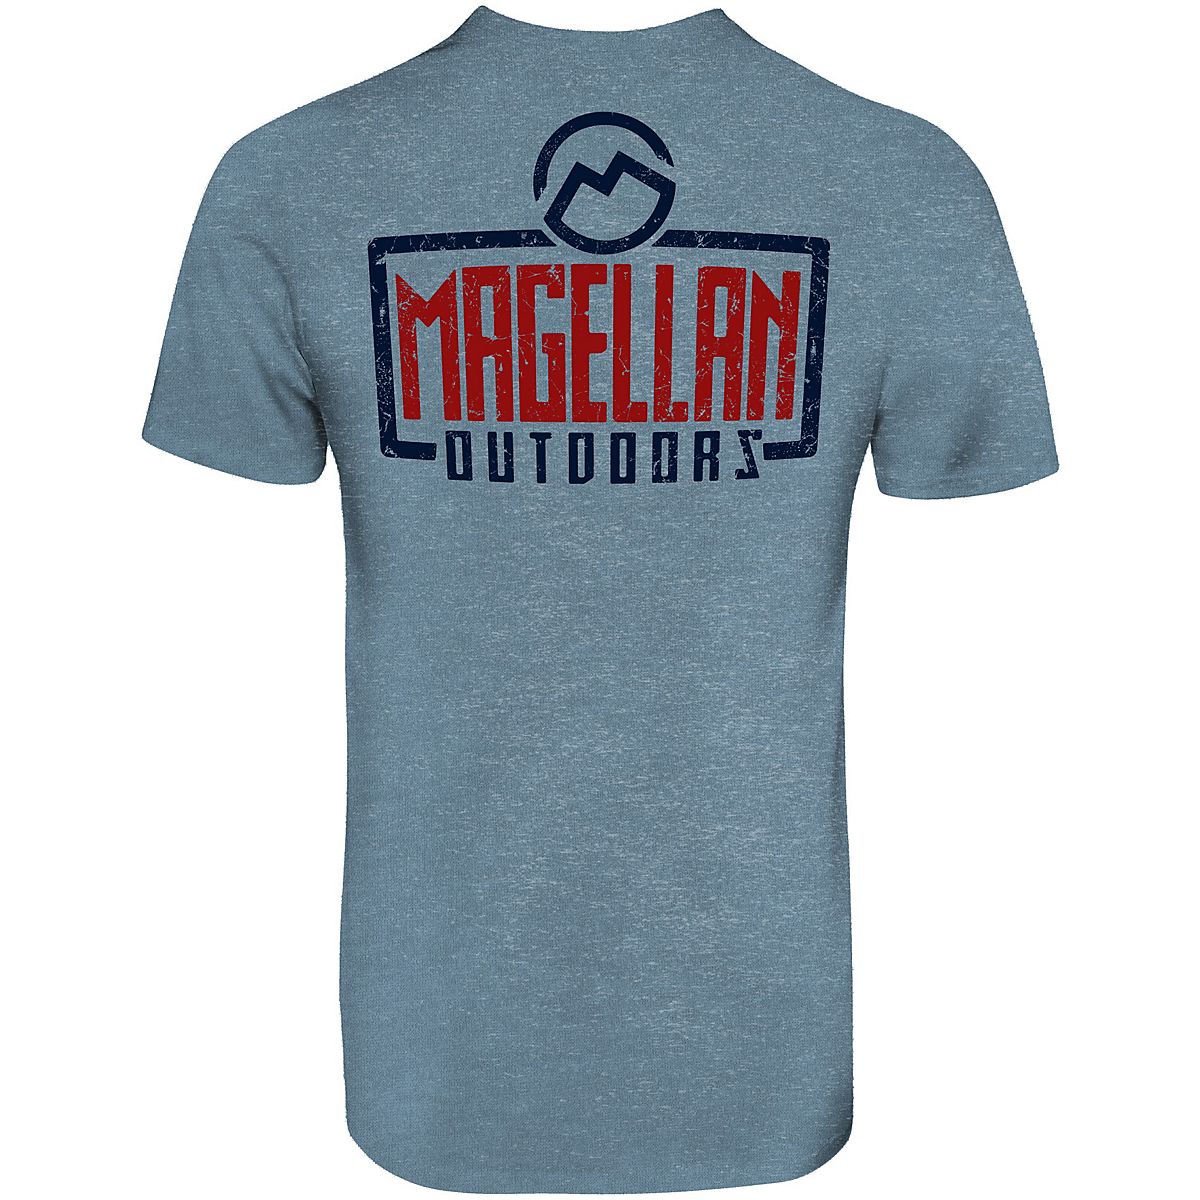 Magellan Outdoors Men's Adirondack Lab Long Sleeve Graphic T-Shirt -  Wishupon